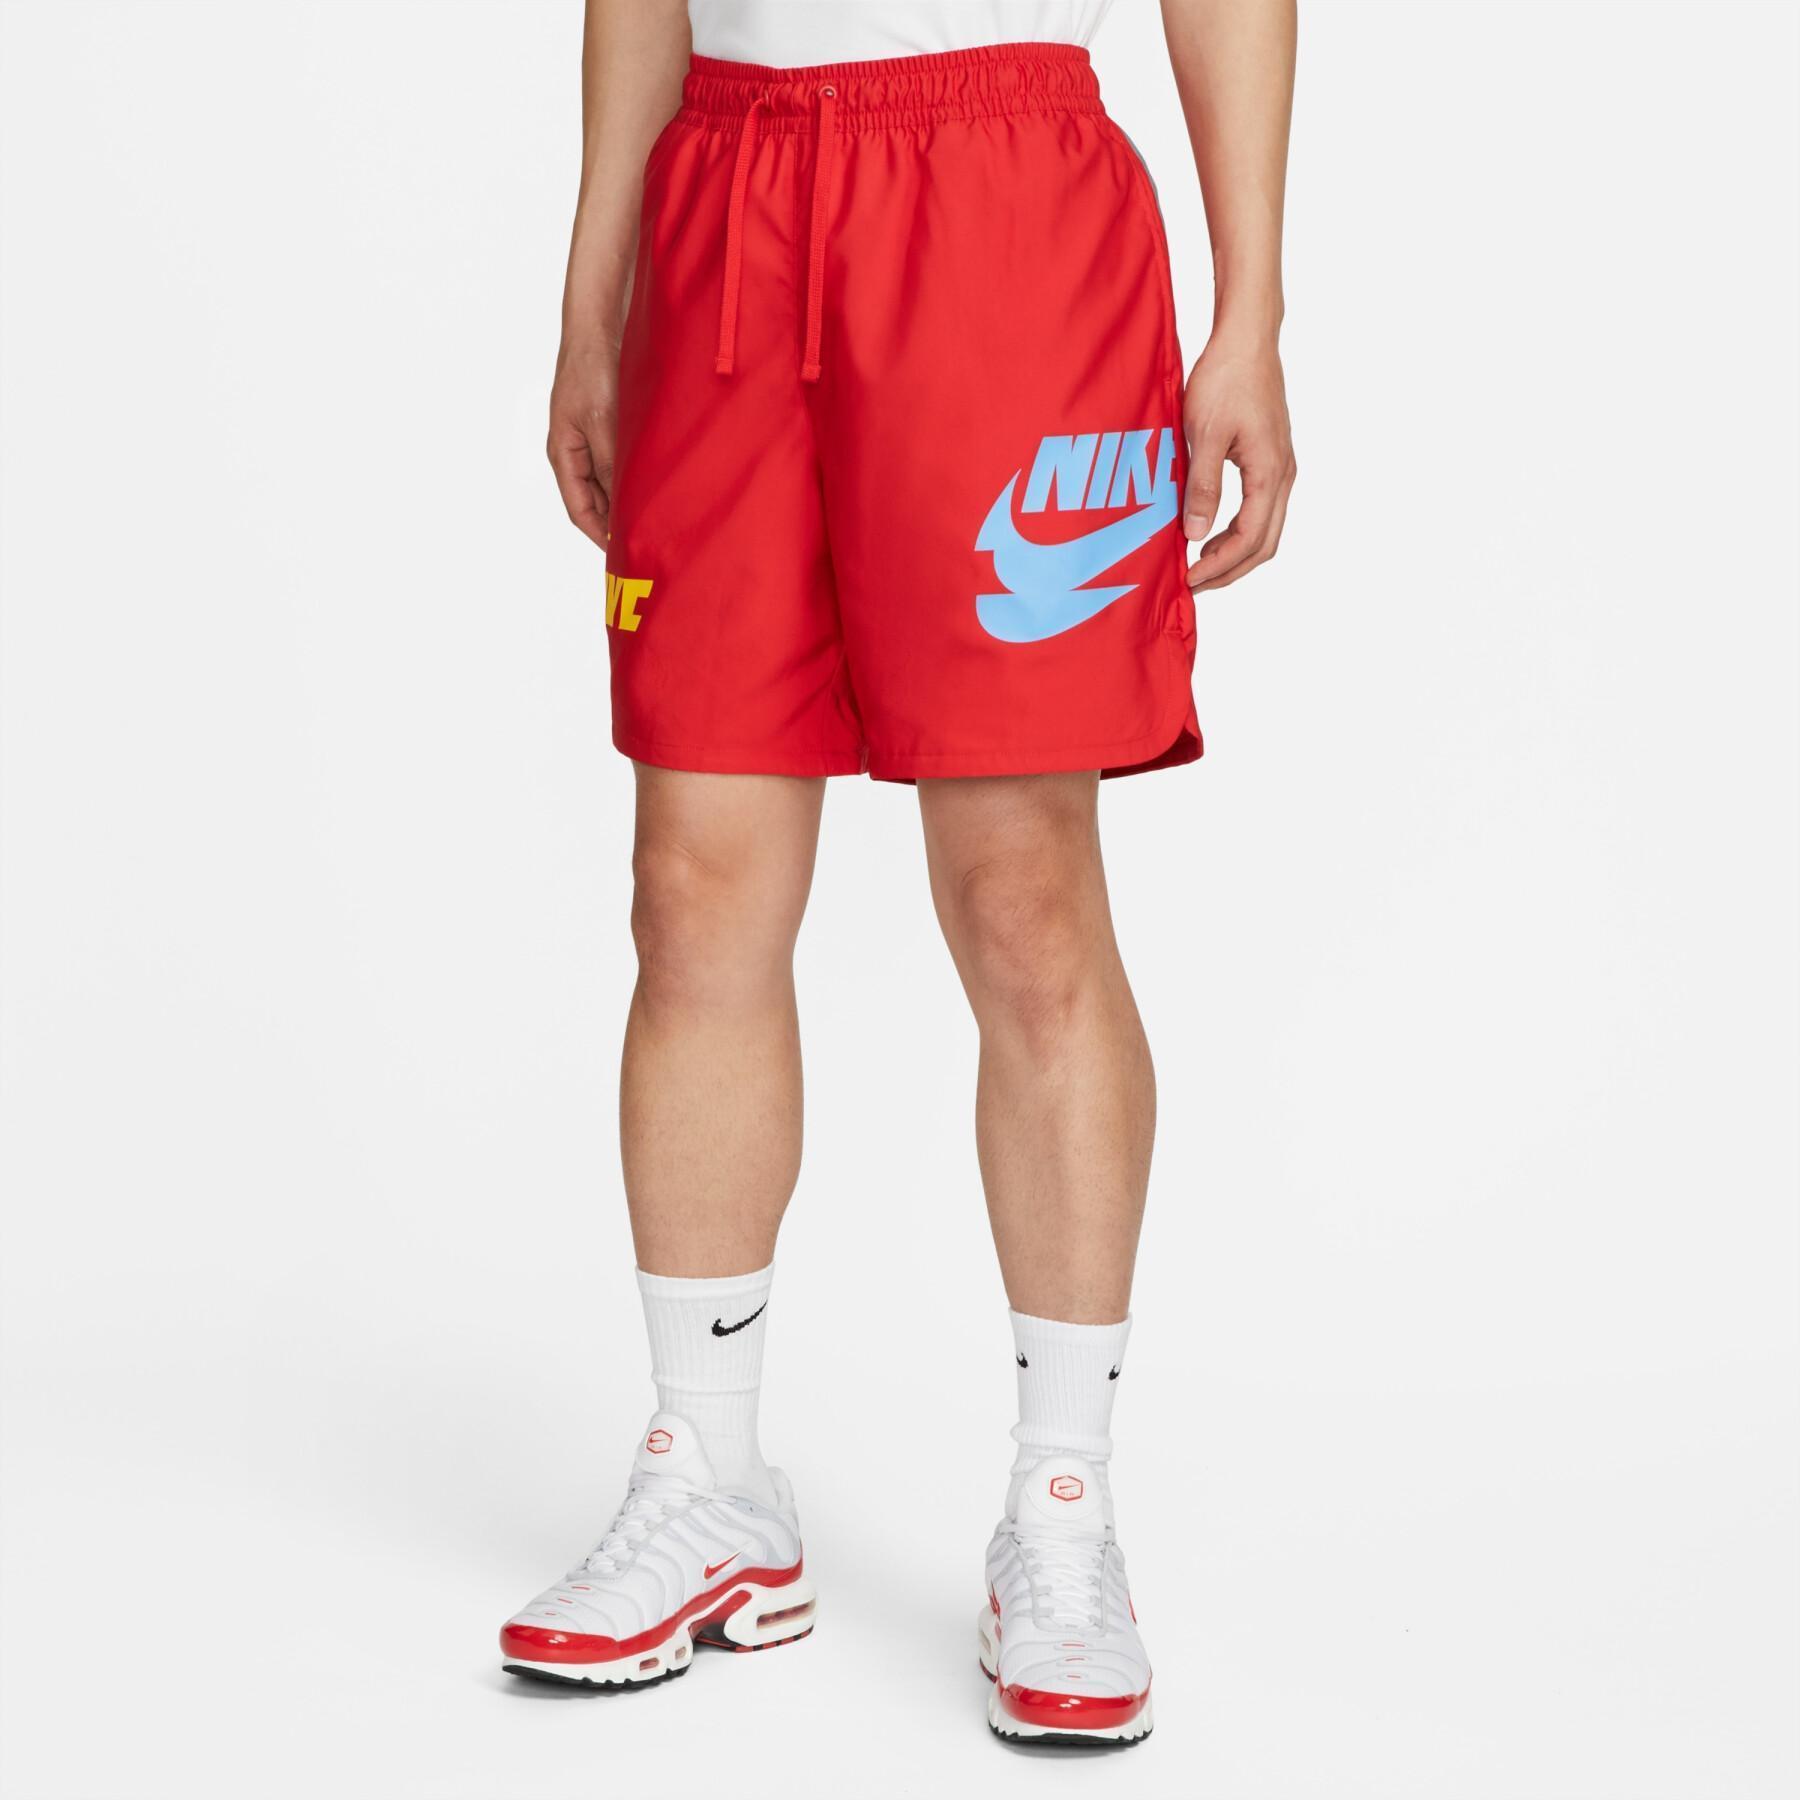 Спортивные шорты мужские Nike Spe+ Wvn Short Mfta DM6879-657 красные L